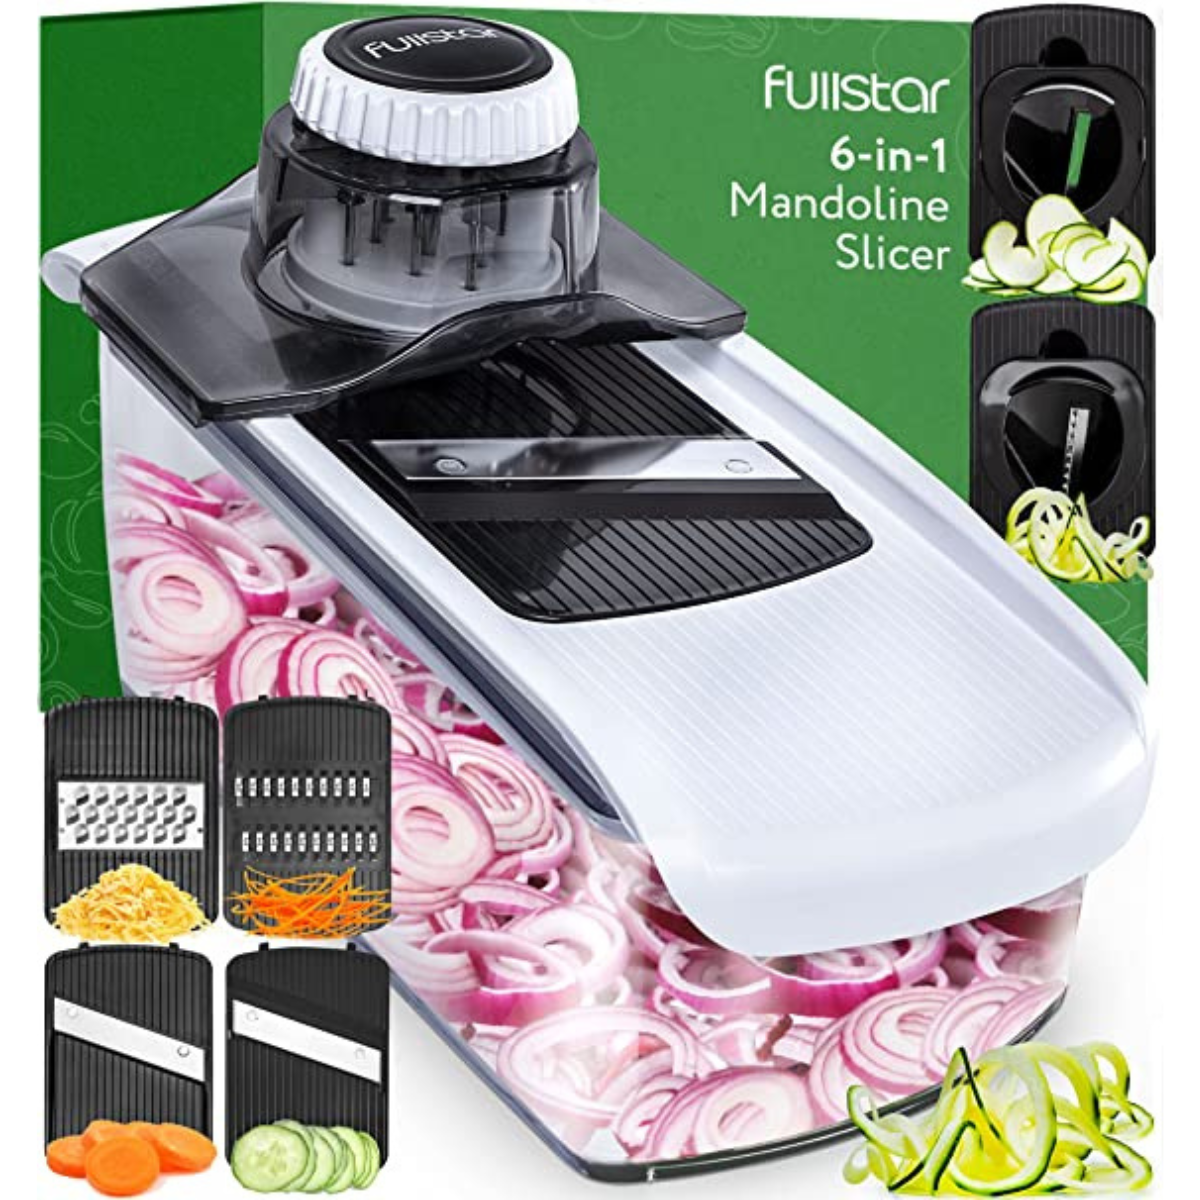 Fullstar 6-in-1 Mandoline Slicer: Versatile Kitchen Gadget, by iohhjghjhj